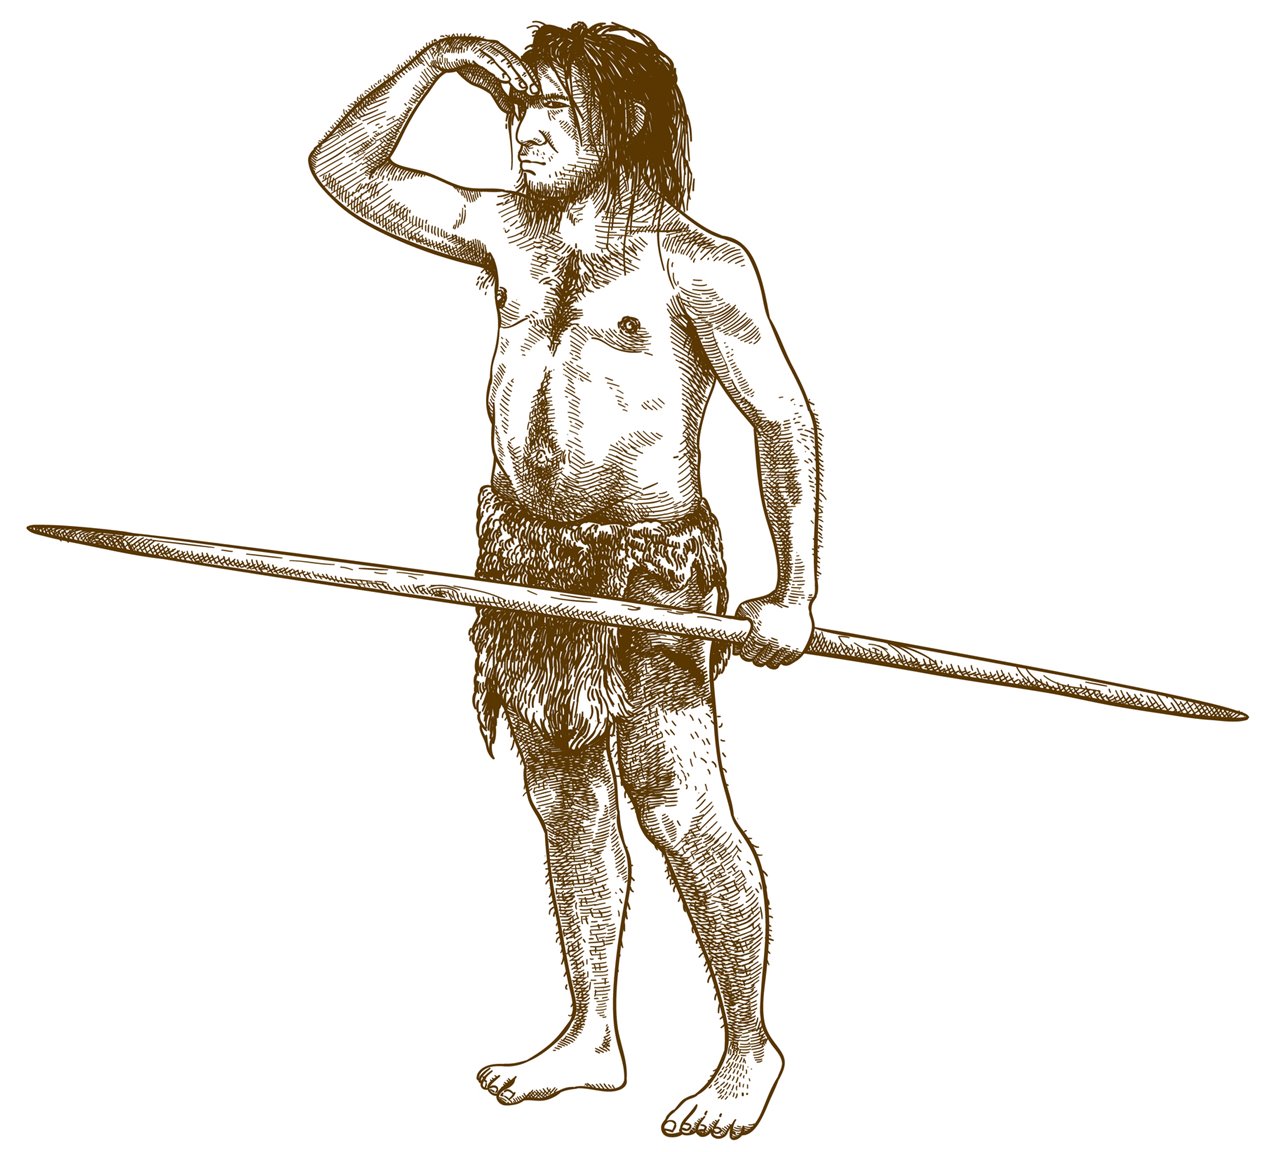 Un neandertal sujeta una lanza, una herramienta de caza muy utilizada a lo largo de la historia.